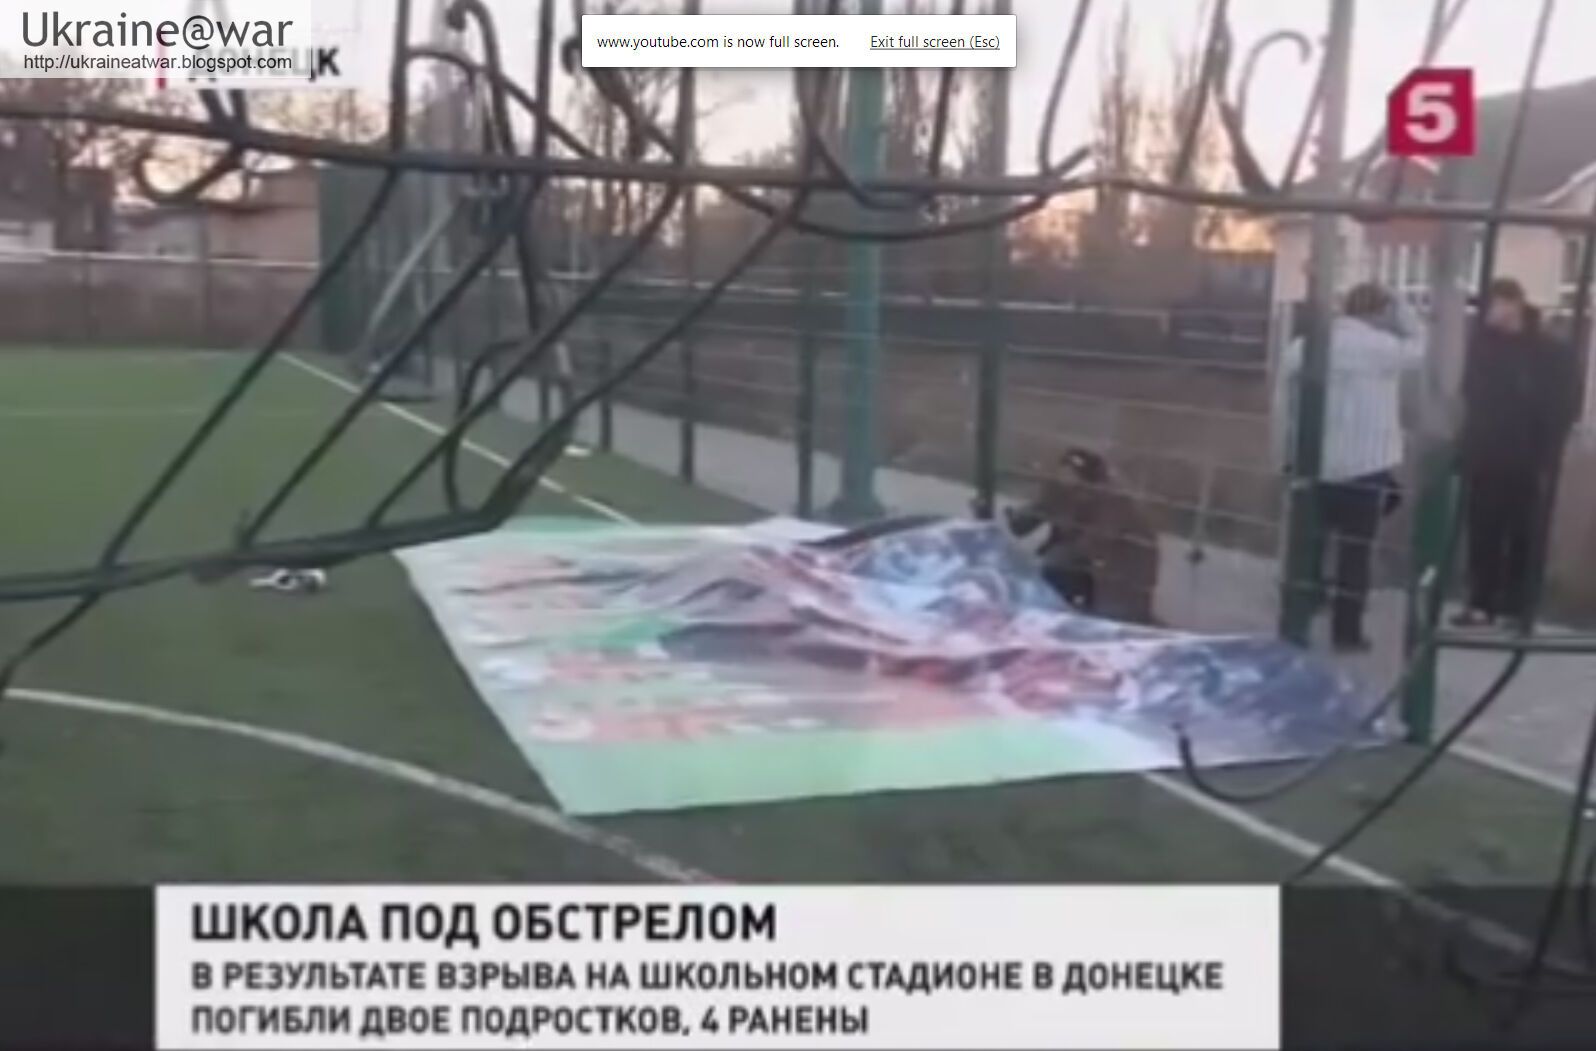 Снаряд, від якого загинули діти в Донецьку, випущений з контрольованою терористами території - МЗС